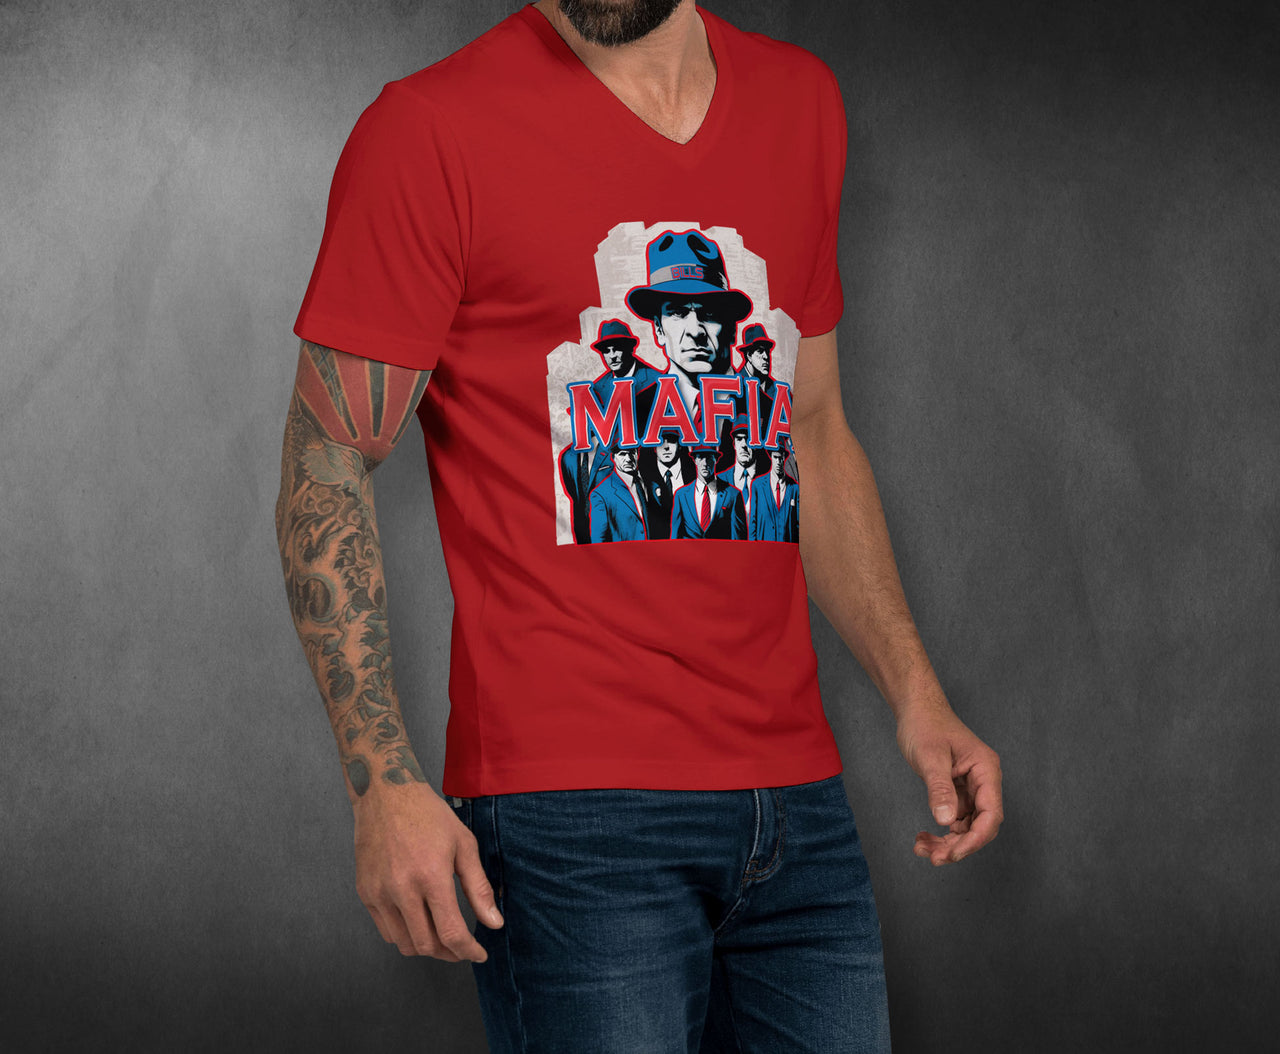 Bills Mafia Posse T-Shirt